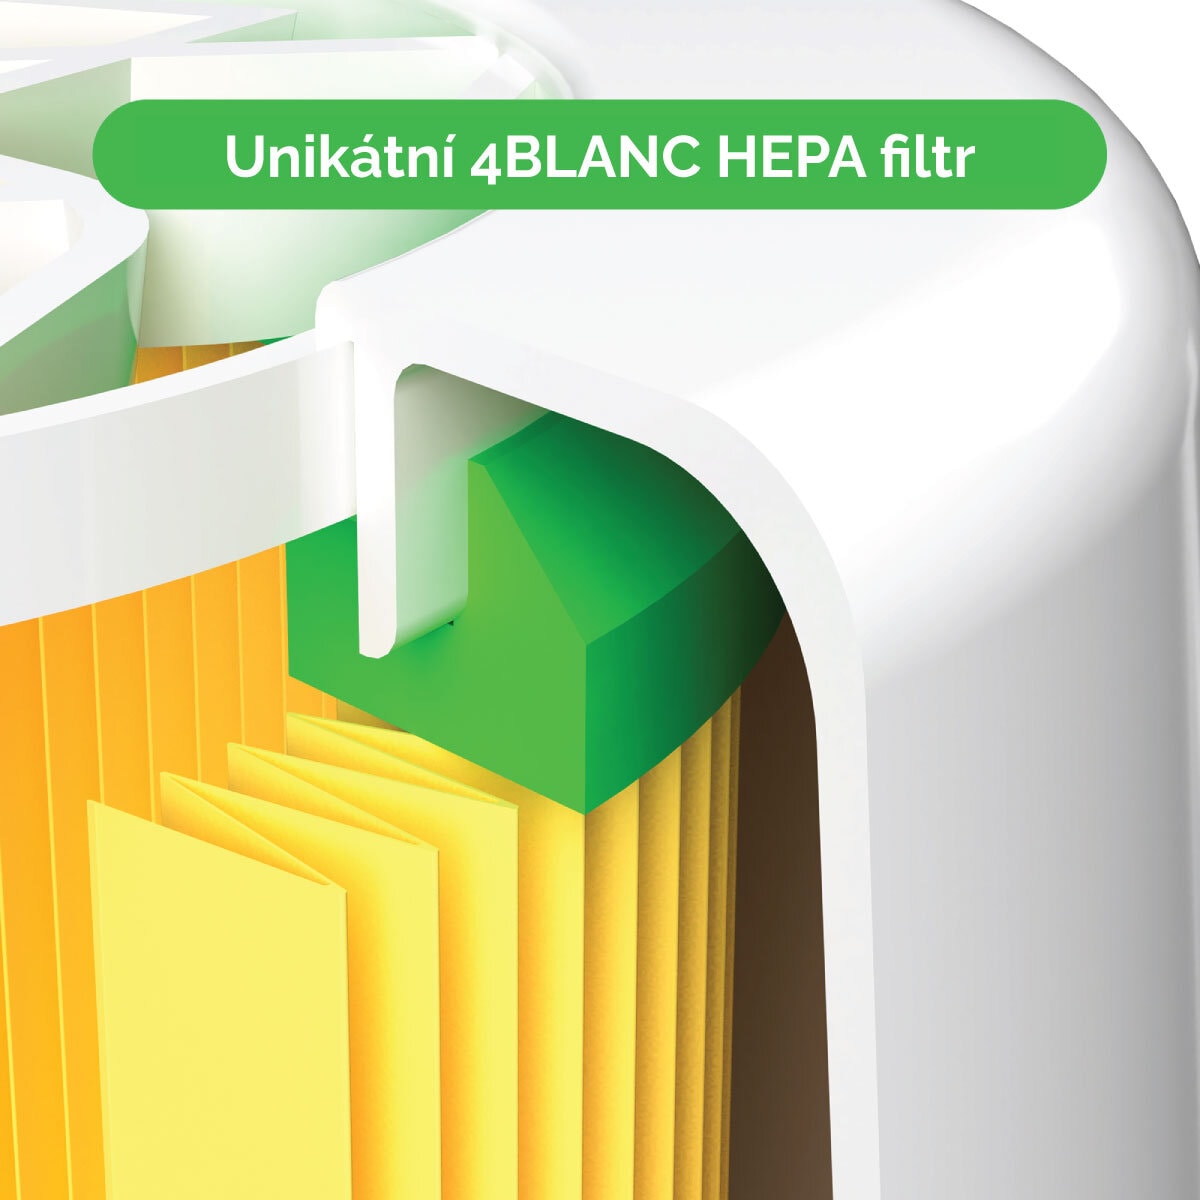 Unikátní 4BLANC HEPA filtr